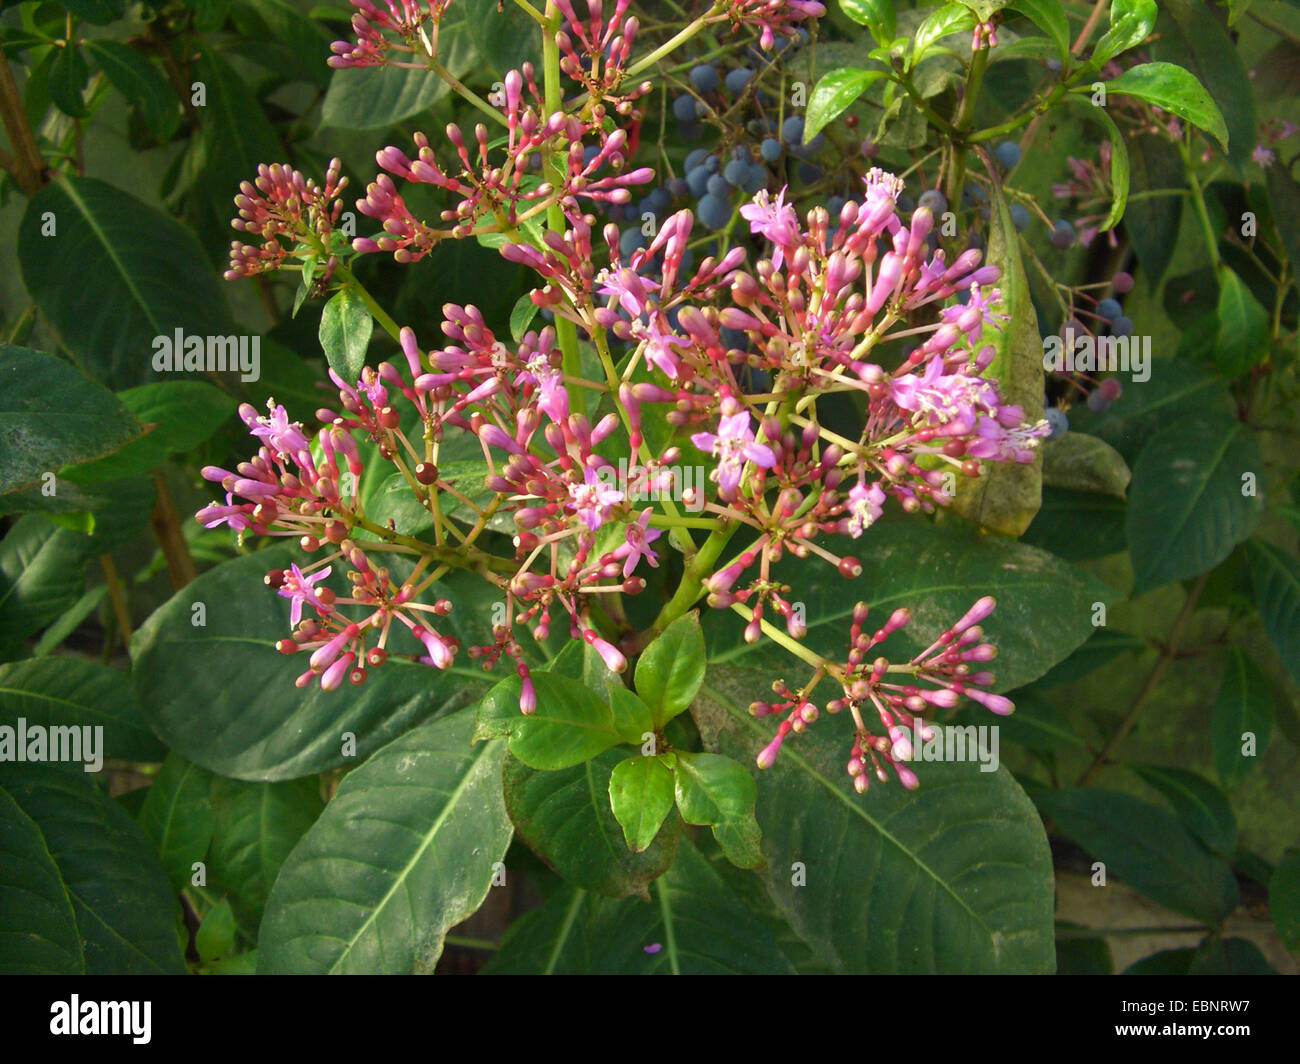 Shrubby Fuchsia, Paniculate Fuchsia (Fuchsia paniculata), blooming Stock Photo